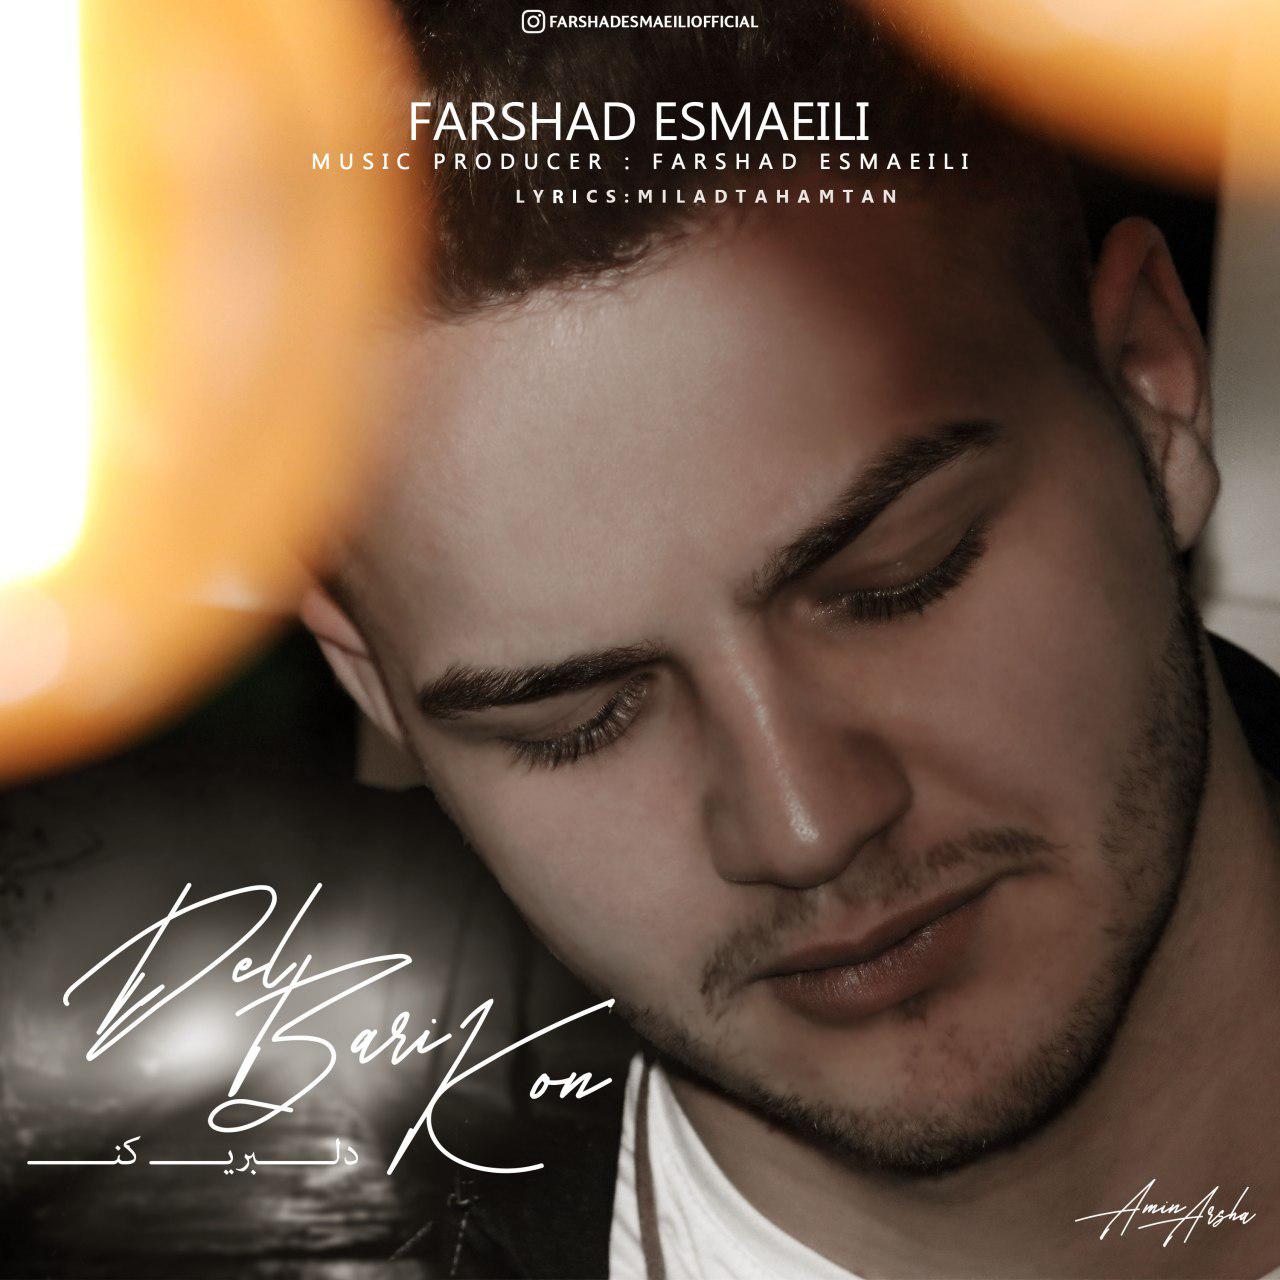 Farshad Esmaeili – Delbari Kon